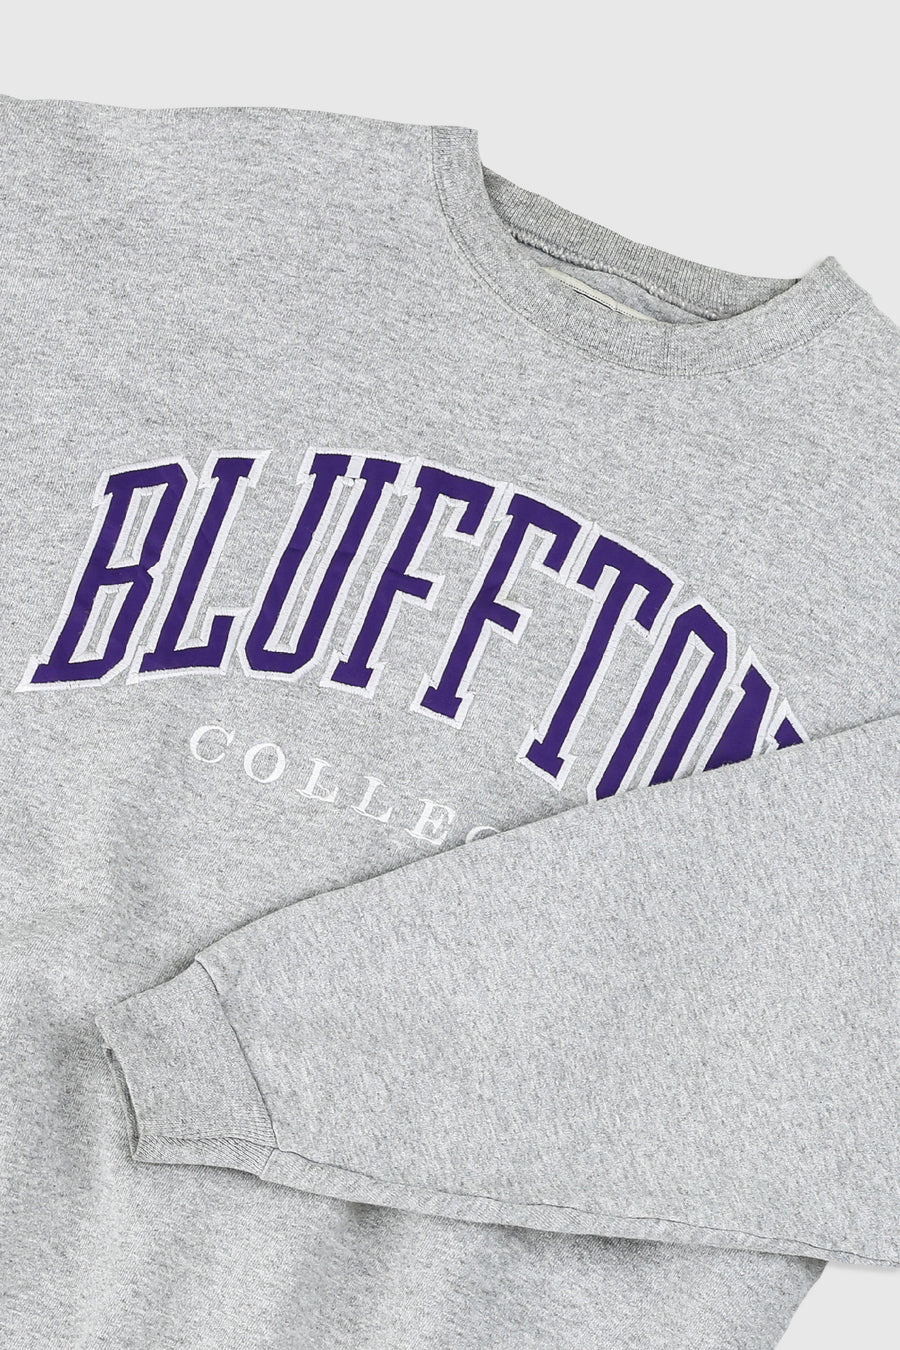 Vintage Bluffton College Sweatshirt